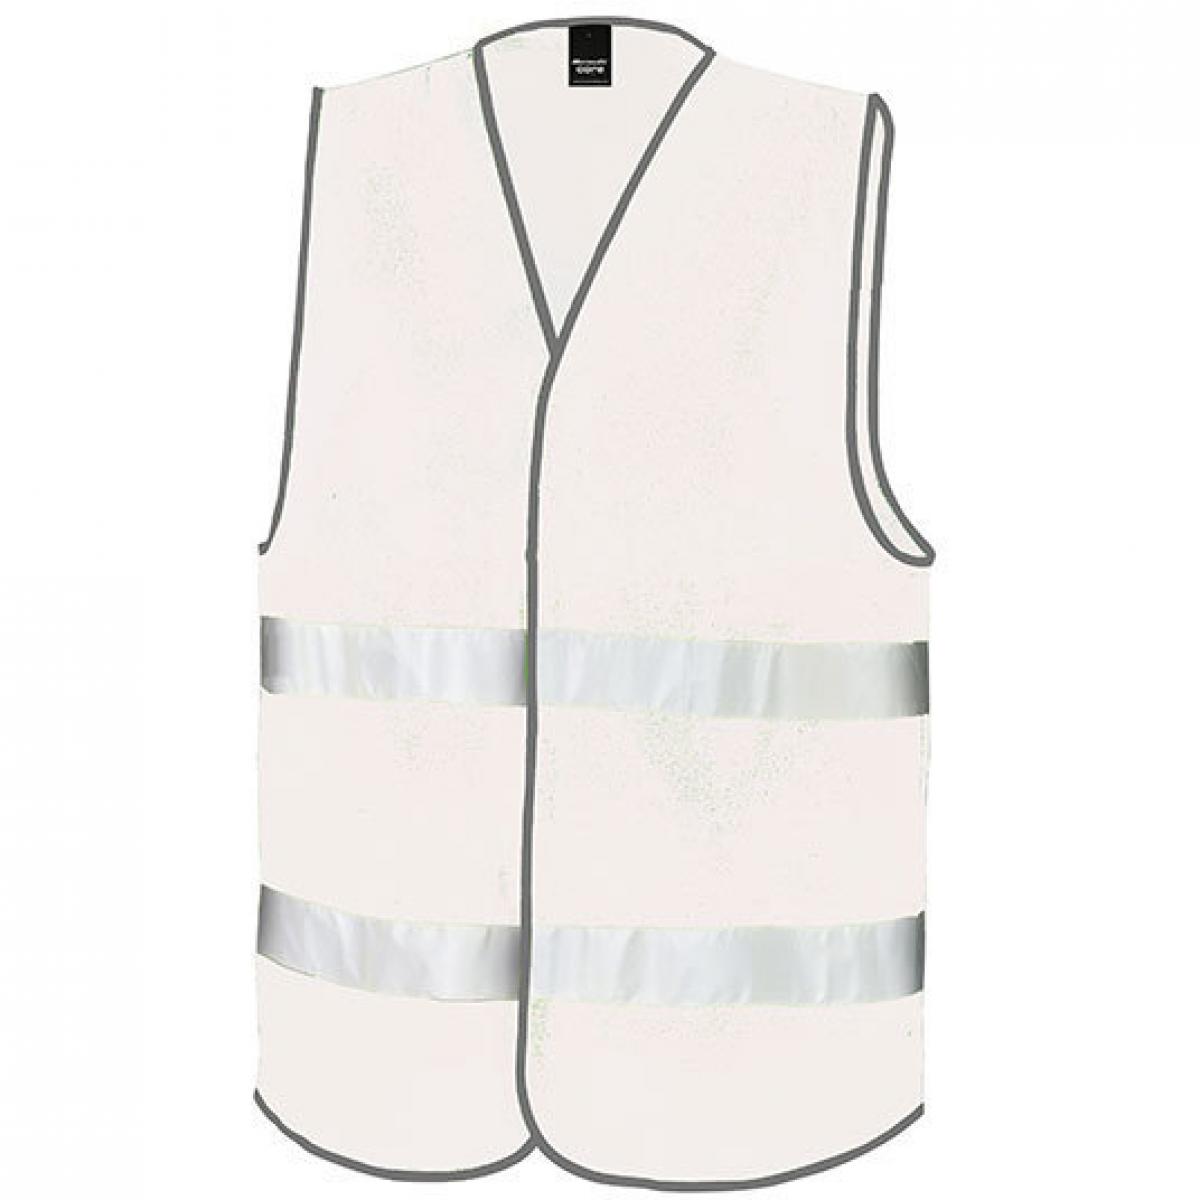 Hersteller: Result Core Herstellernummer: R200X Artikelbezeichnung: Motorist Safety Vest / ISOEN20471:2013, Klasse 2 Farbe: White